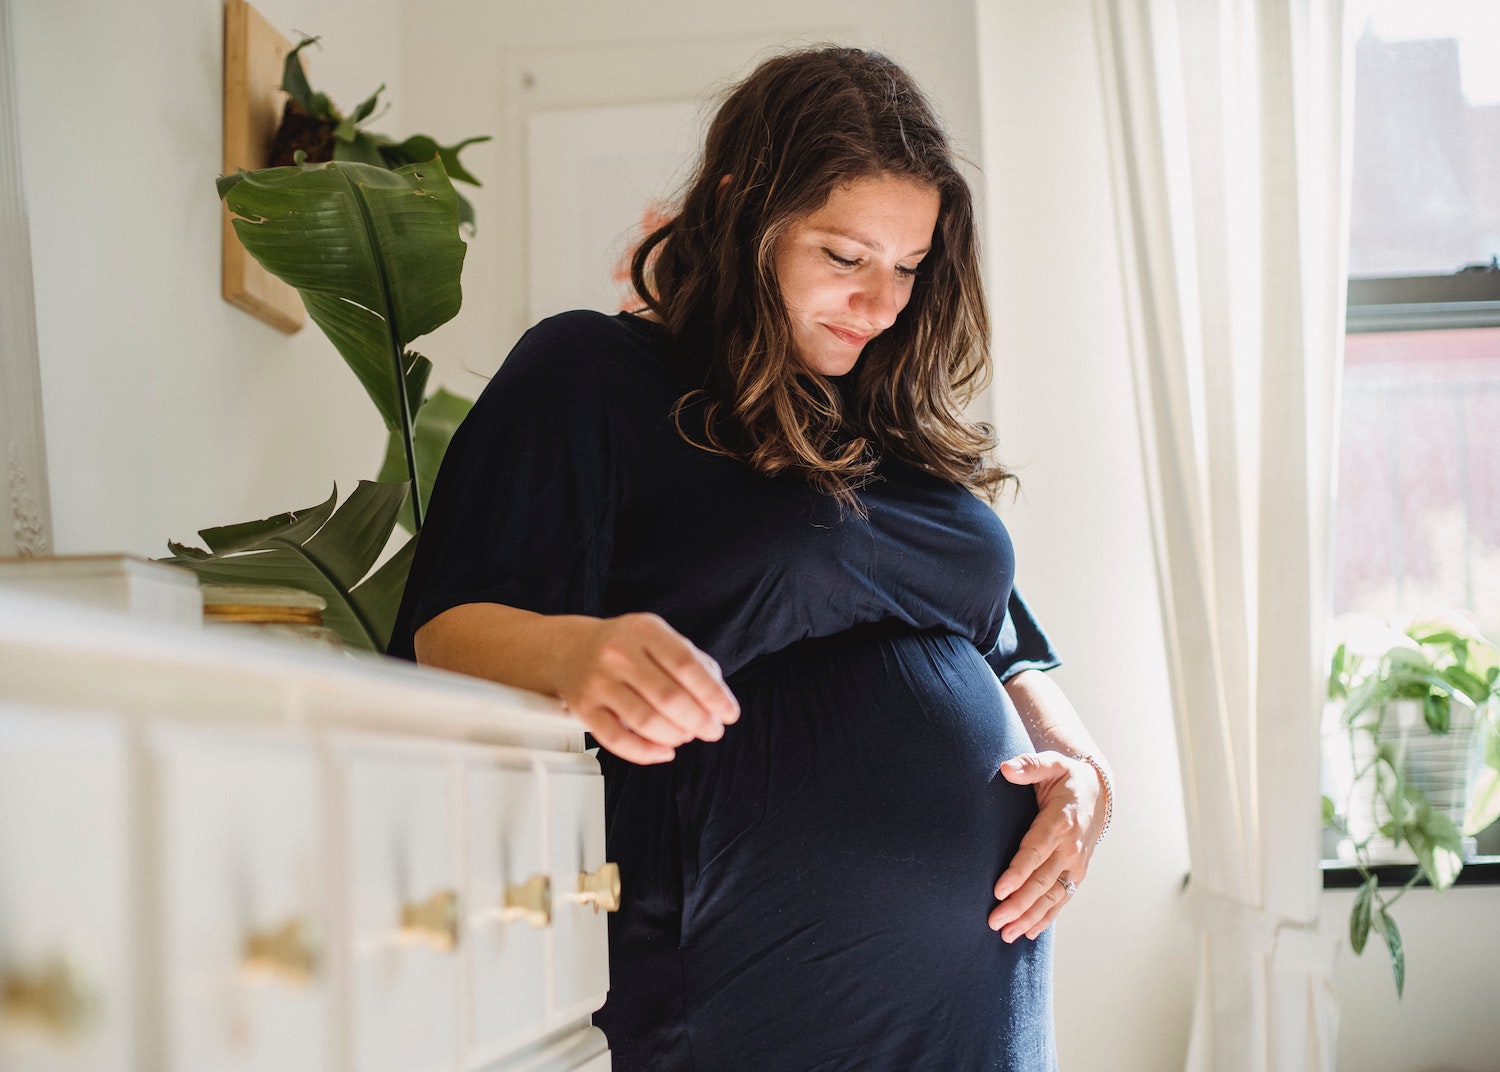 Le nez qui grossit pendant la grossesse : mythe ou réalité?